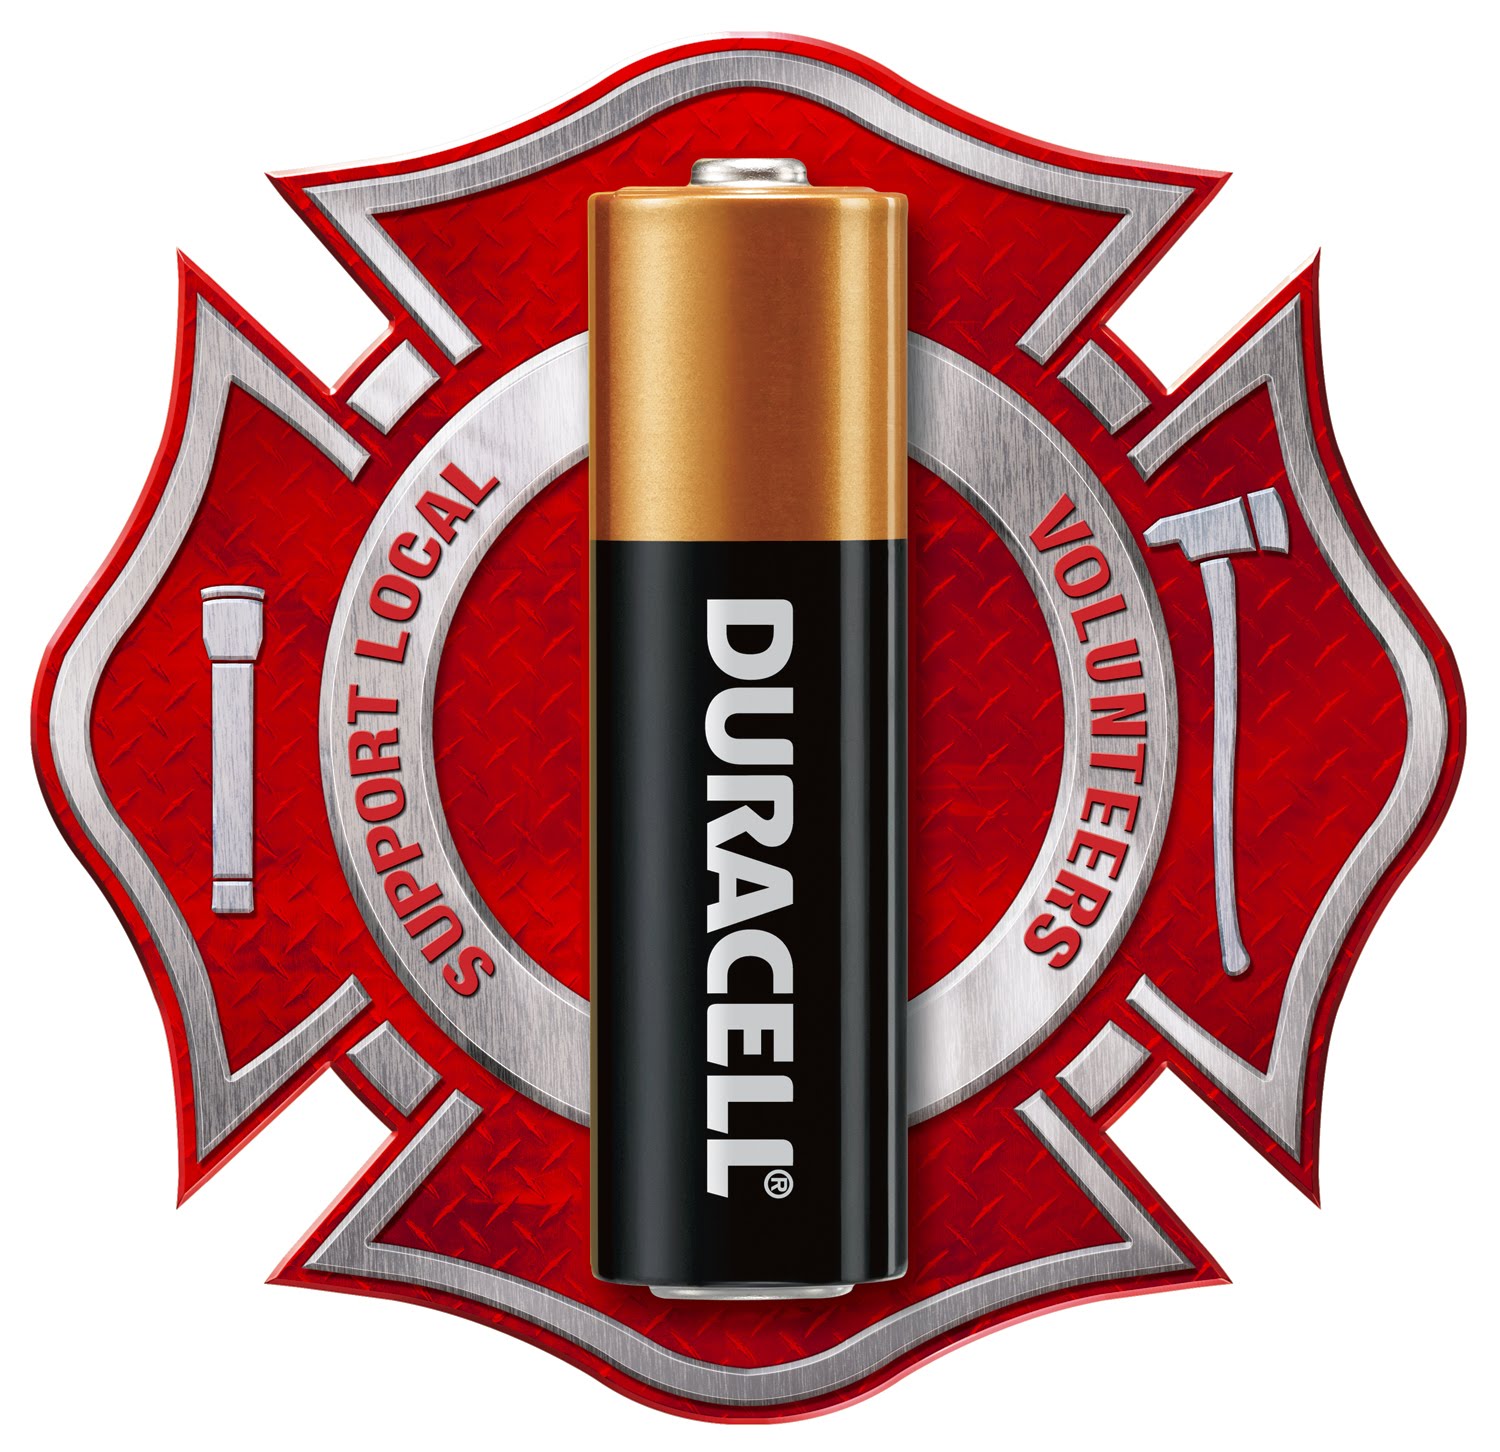 Duracell logo. Get battery